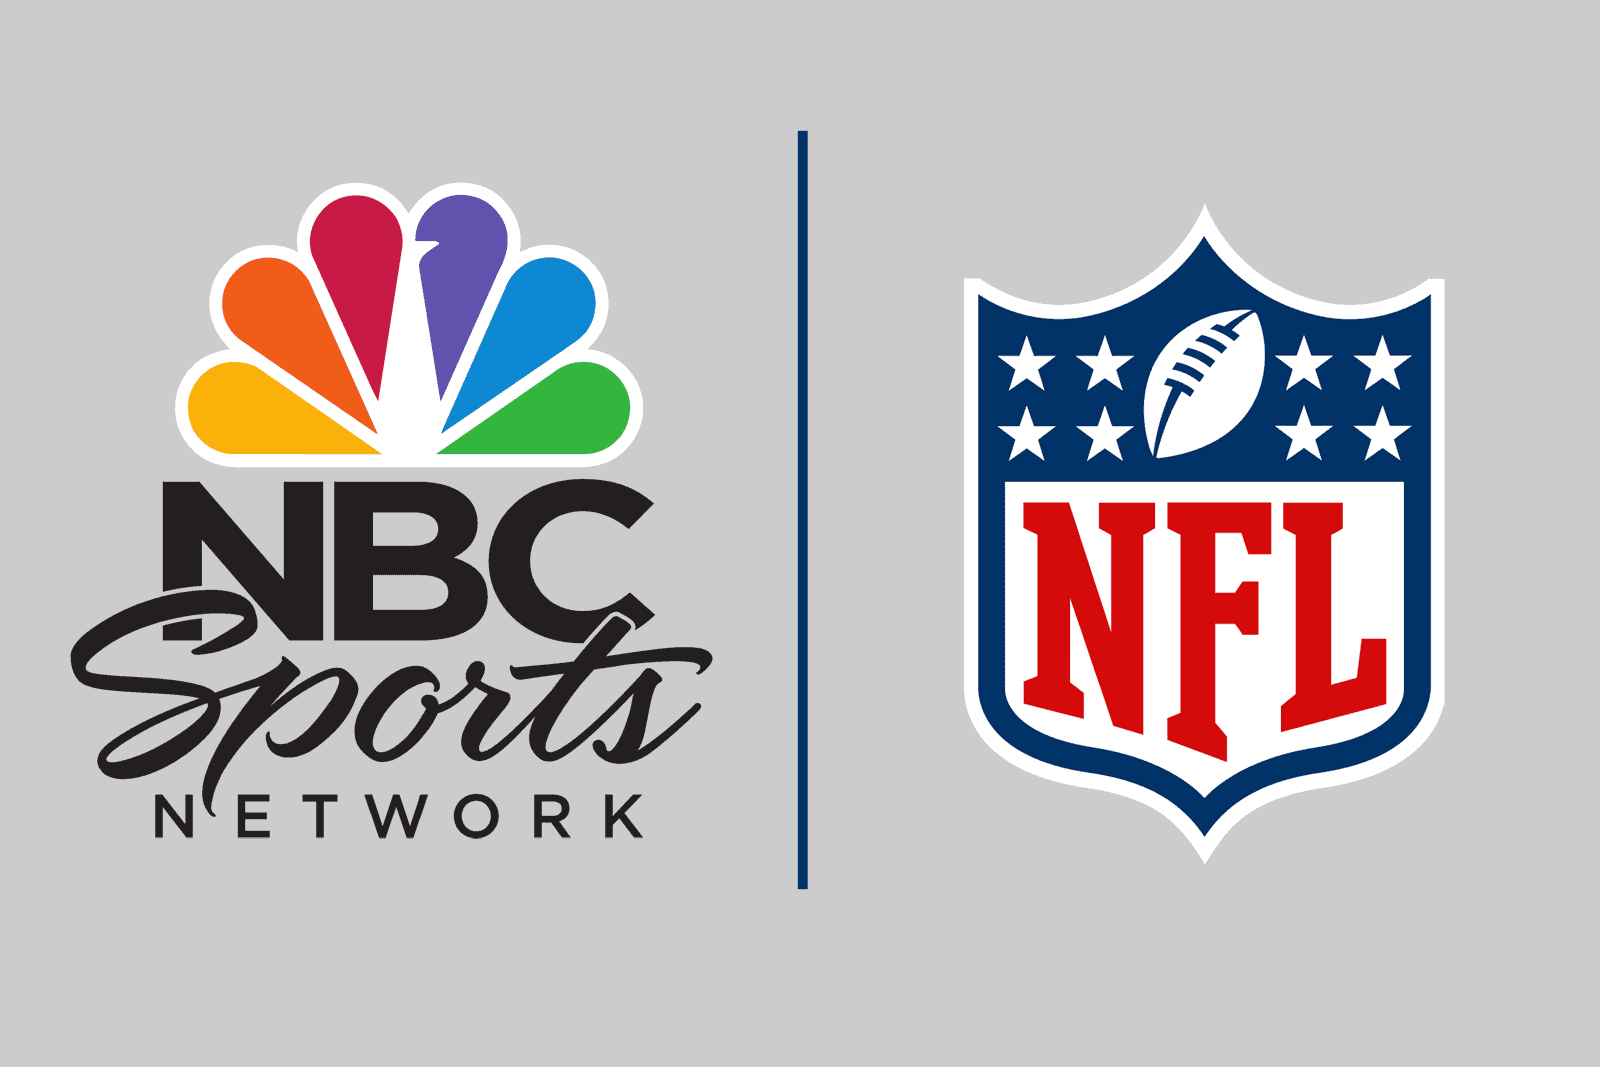 NBC Sports - NFL